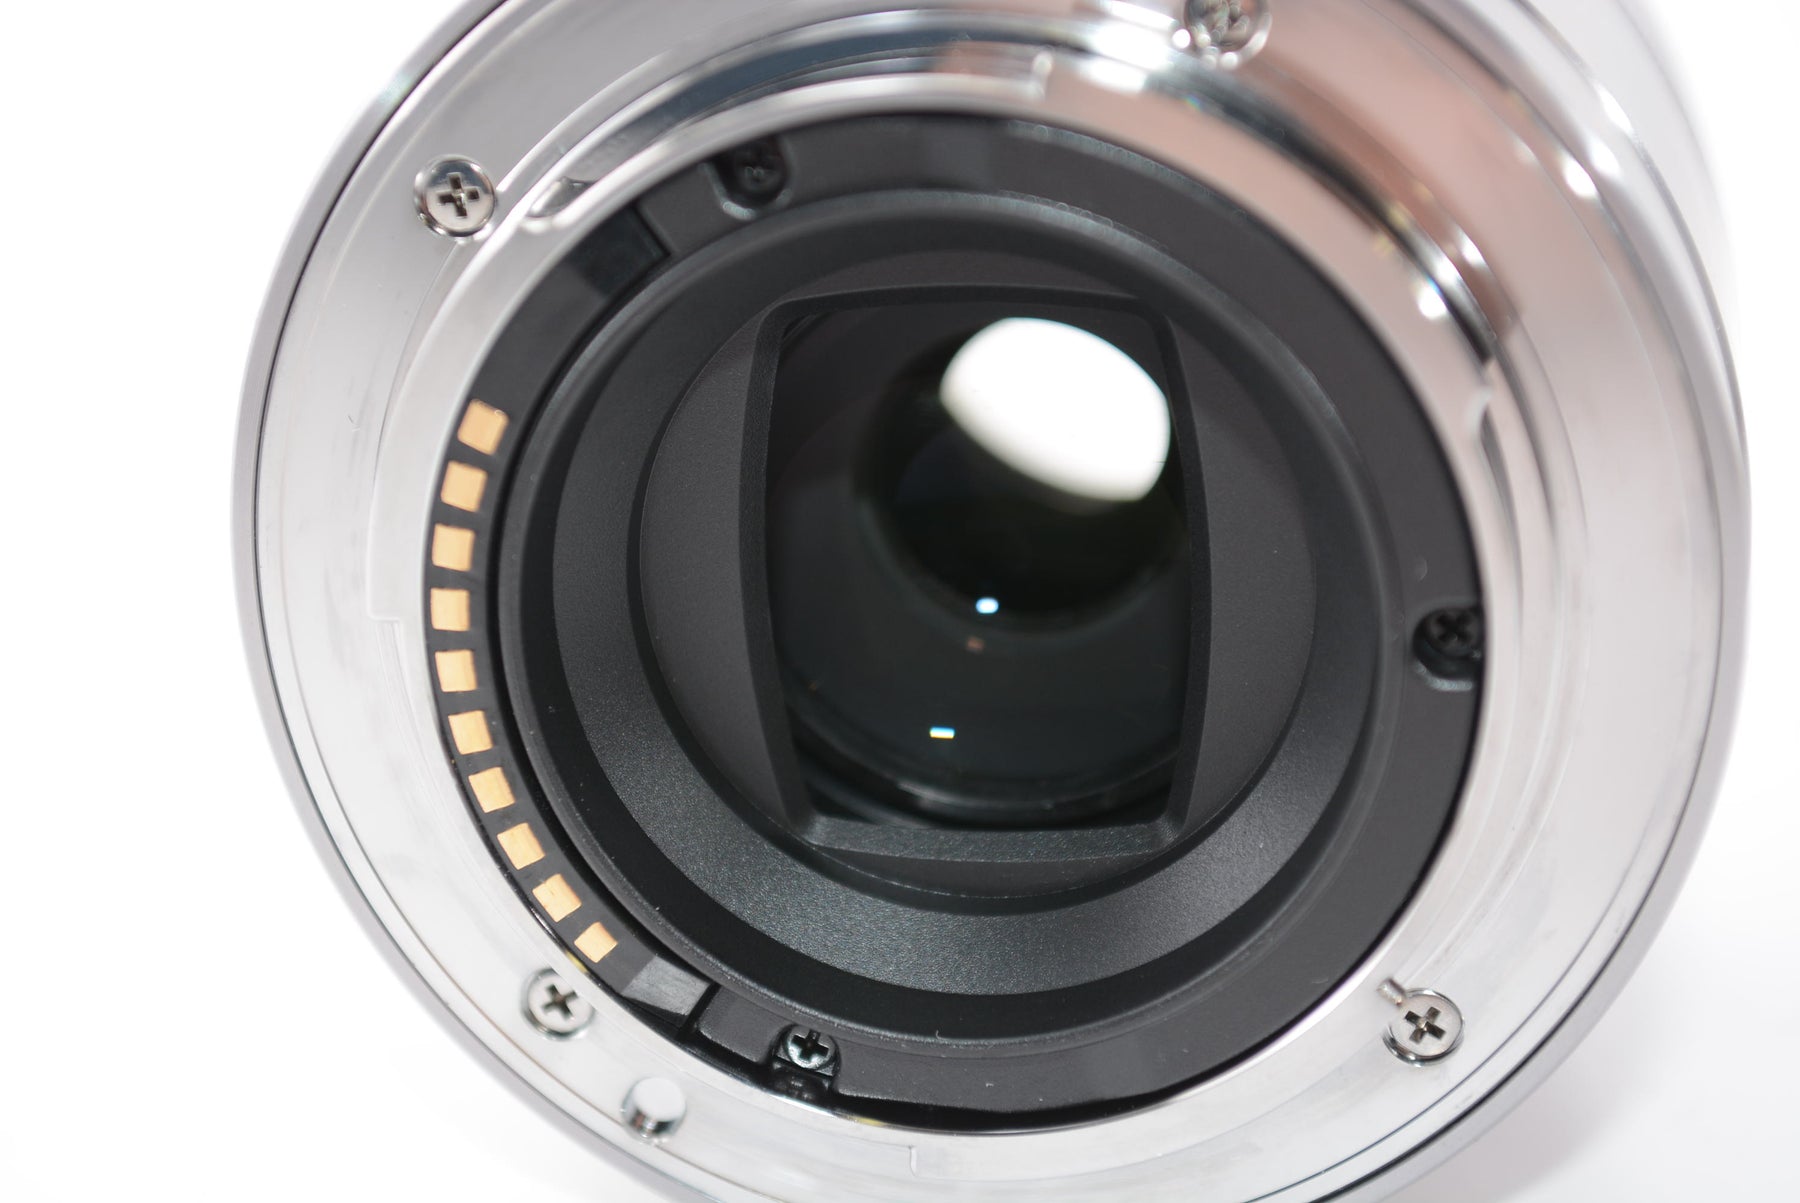 【外観特上級】ソニー SONY 単焦点レンズ E 30mm F3.5 Macro ソニー Eマウント用 APS-C専用 SEL30M35